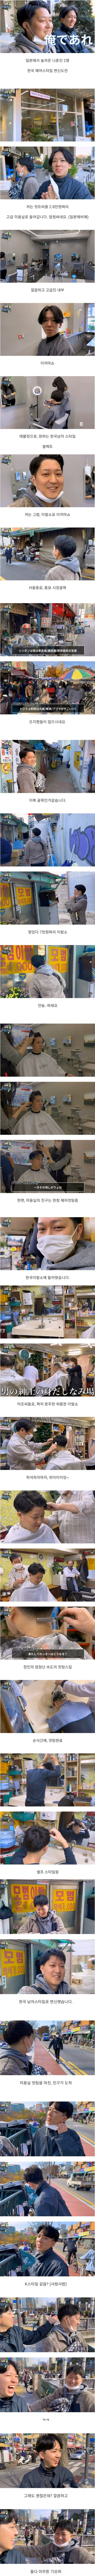 일본인들의 한국 이발소 VS 미용실 체험기.jpg